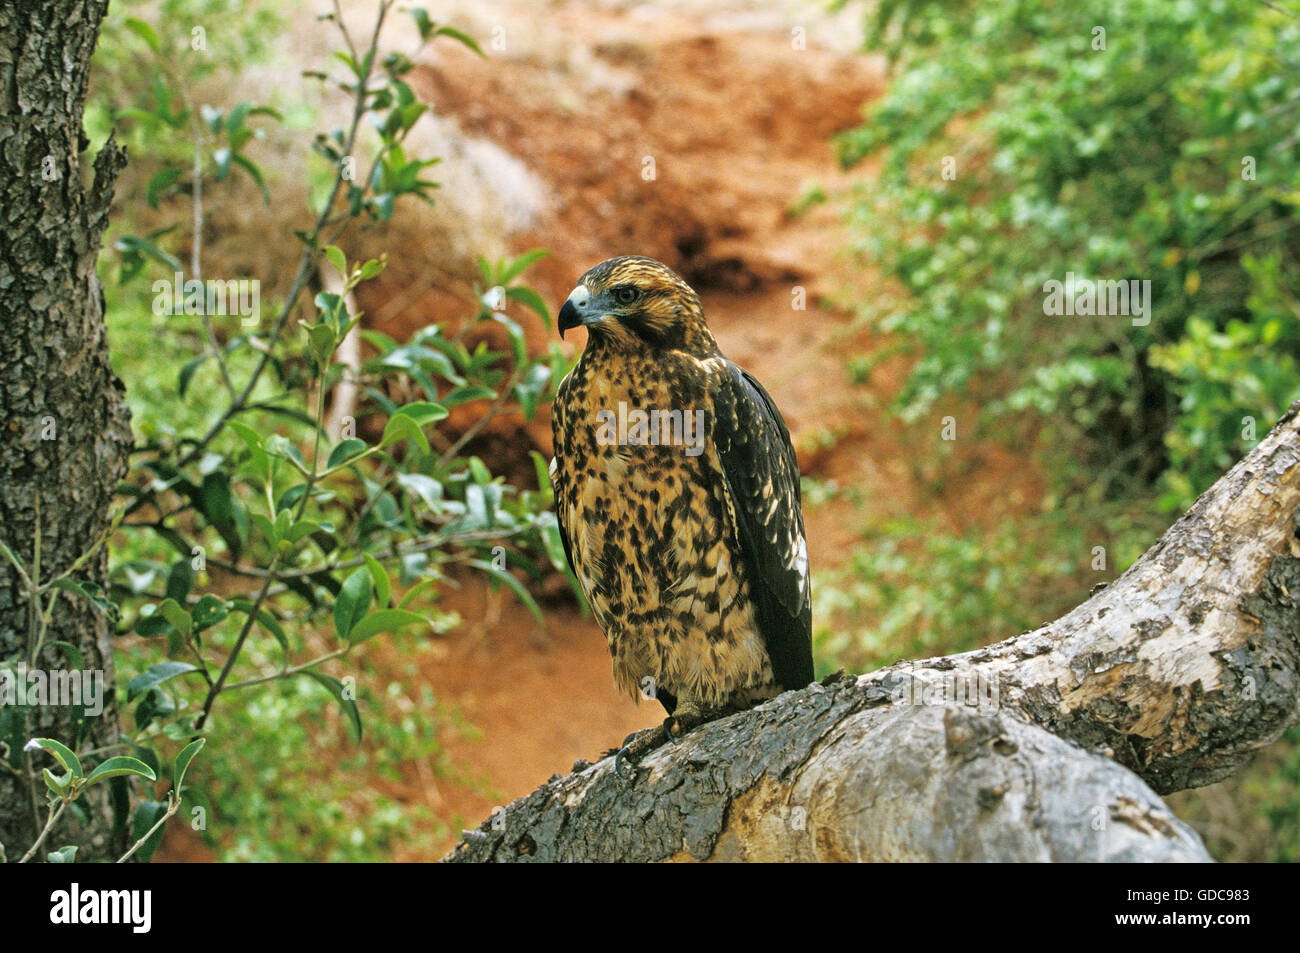 Galapagos Hawk, buteo galapagoensis, Adult, Galapagos Islands Stock Photo